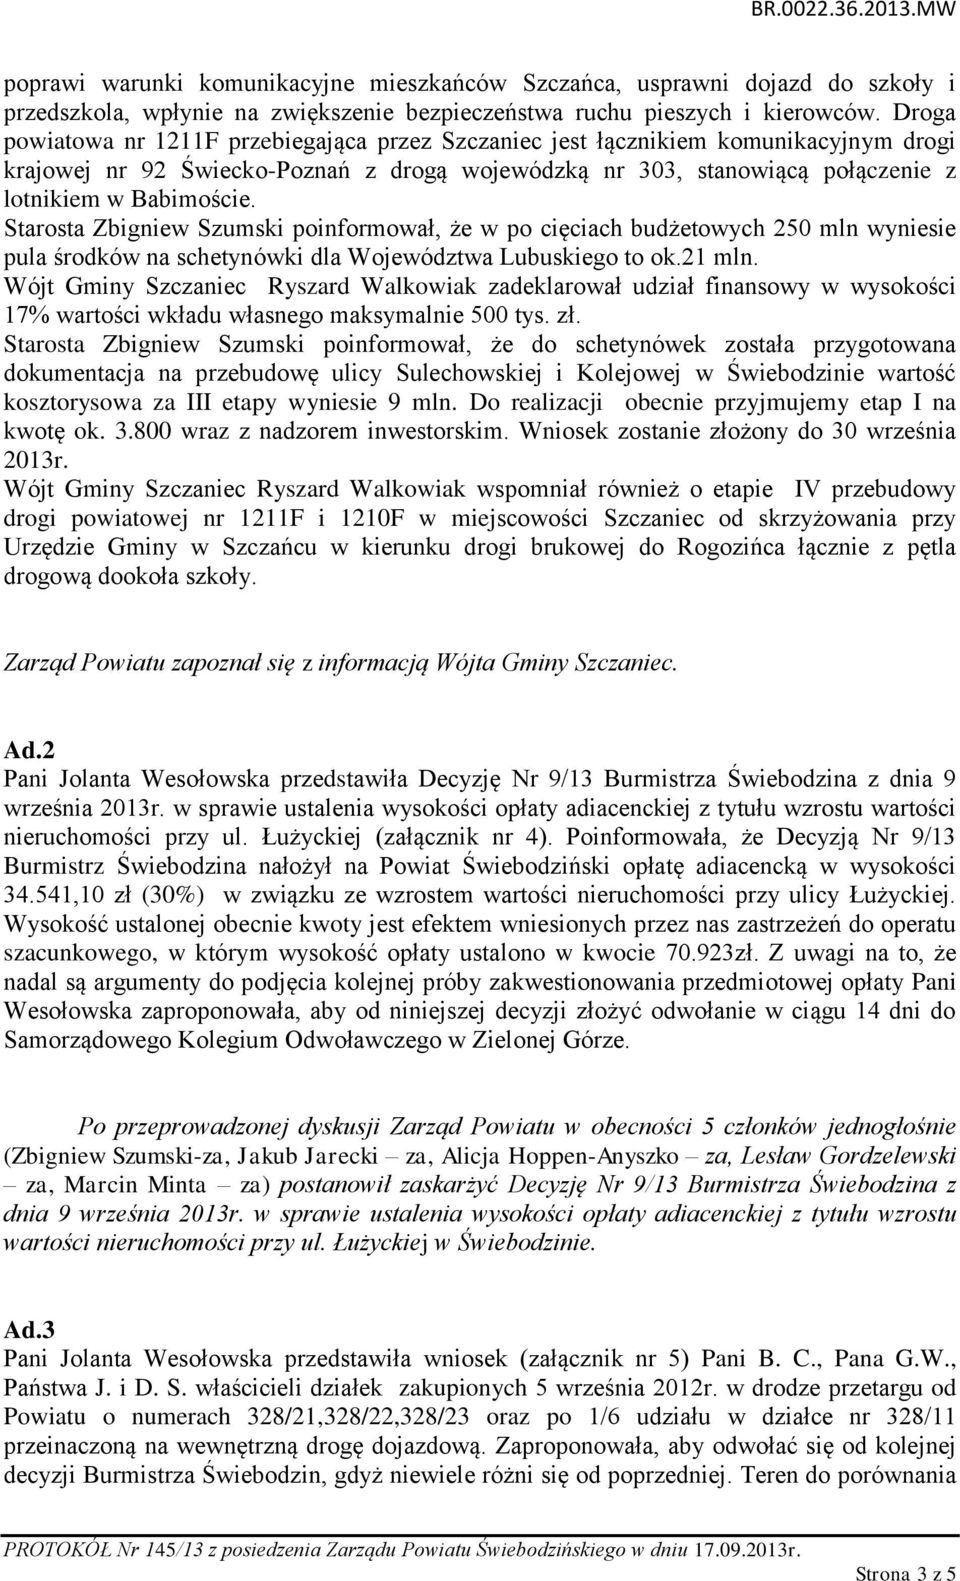 Starosta Zbigniew Szumski poinformował, że w po cięciach budżetowych 250 mln wyniesie pula środków na schetynówki dla Województwa Lubuskiego to ok.21 mln.